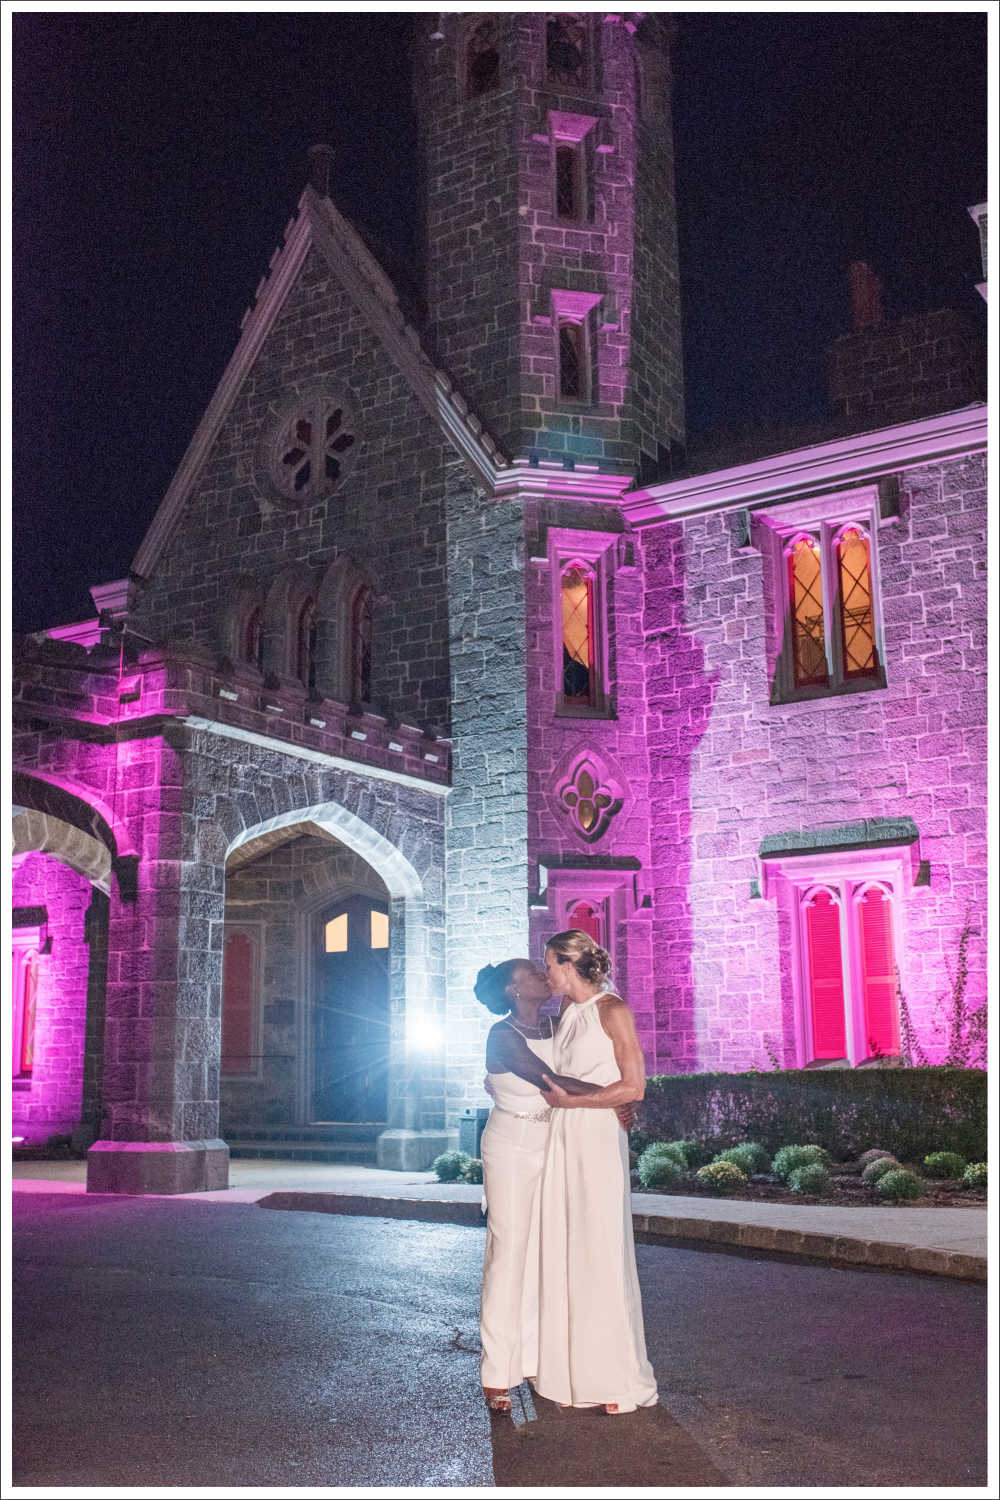 Liz & Keisha's romantic wedding at Whitby Castle, Rye, NY